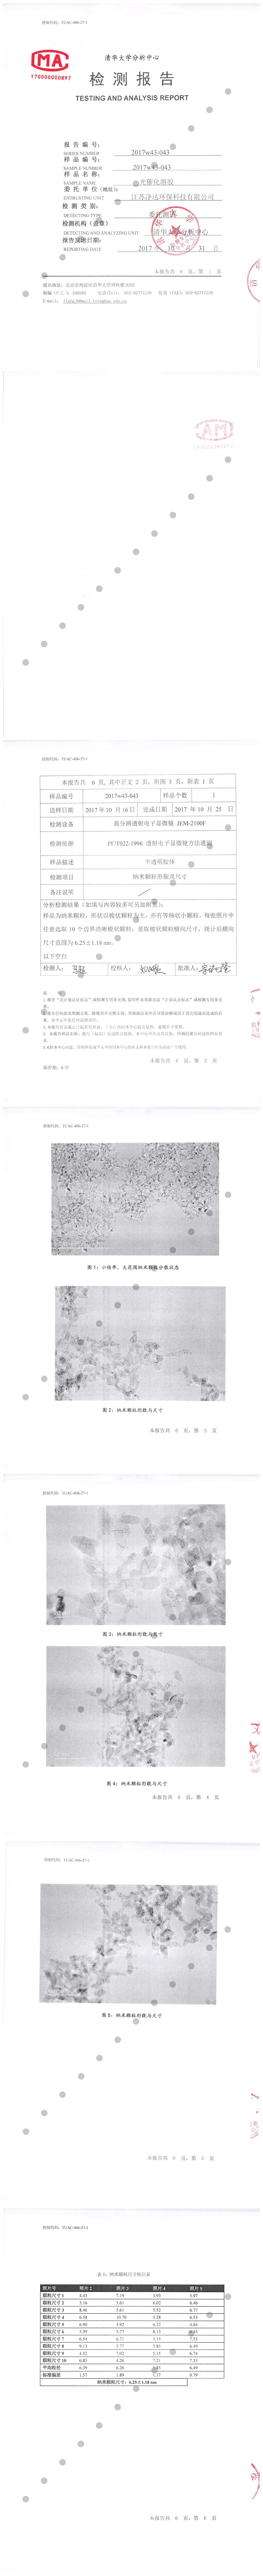 纳米粒径pdf-1_副本.jpg